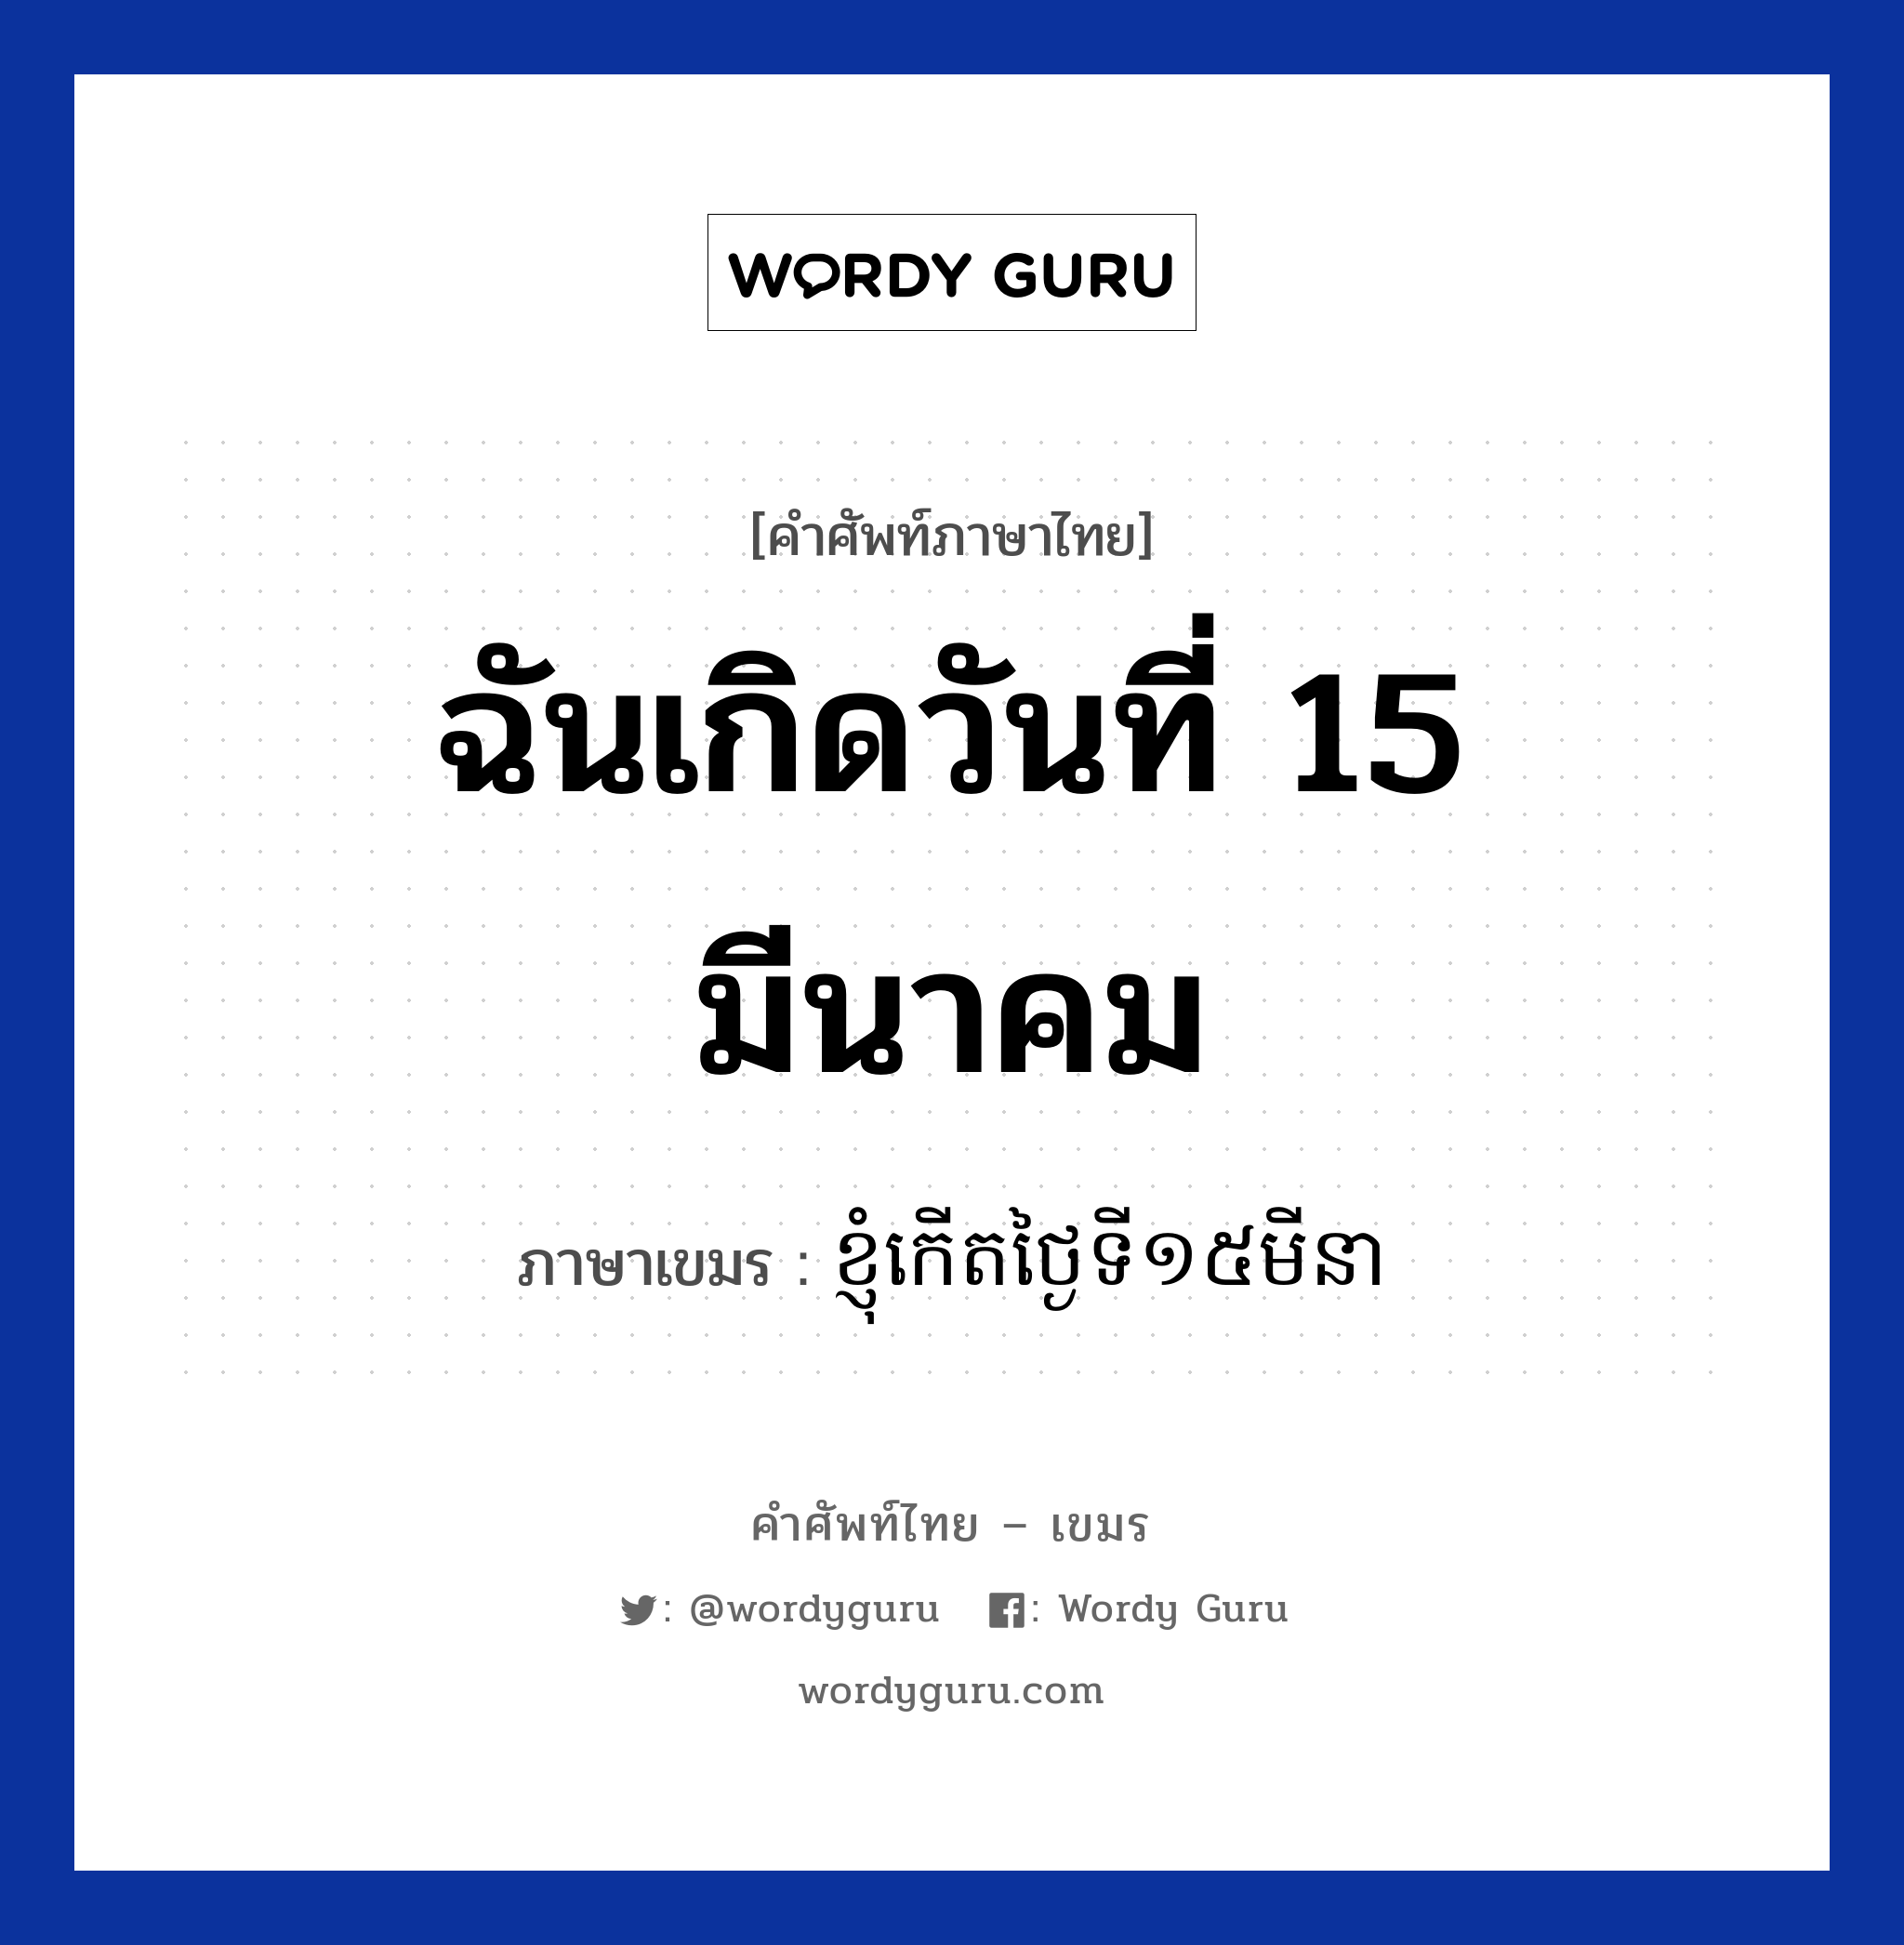 ฉันเกิดวันที่ 15 มีนาคม ภาษาเขมรคืออะไร, คำศัพท์ภาษาไทย - เขมร ฉันเกิดวันที่ 15 มีนาคม ภาษาเขมร ខ្ញុំកេីតថ្ងៃទី​១៥មីនា หมวด บทสนทนาเกี่ยวกับวัน เวลา Knhom kert tngai tii dobpram minea หมวด บทสนทนาเกี่ยวกับวัน เวลา